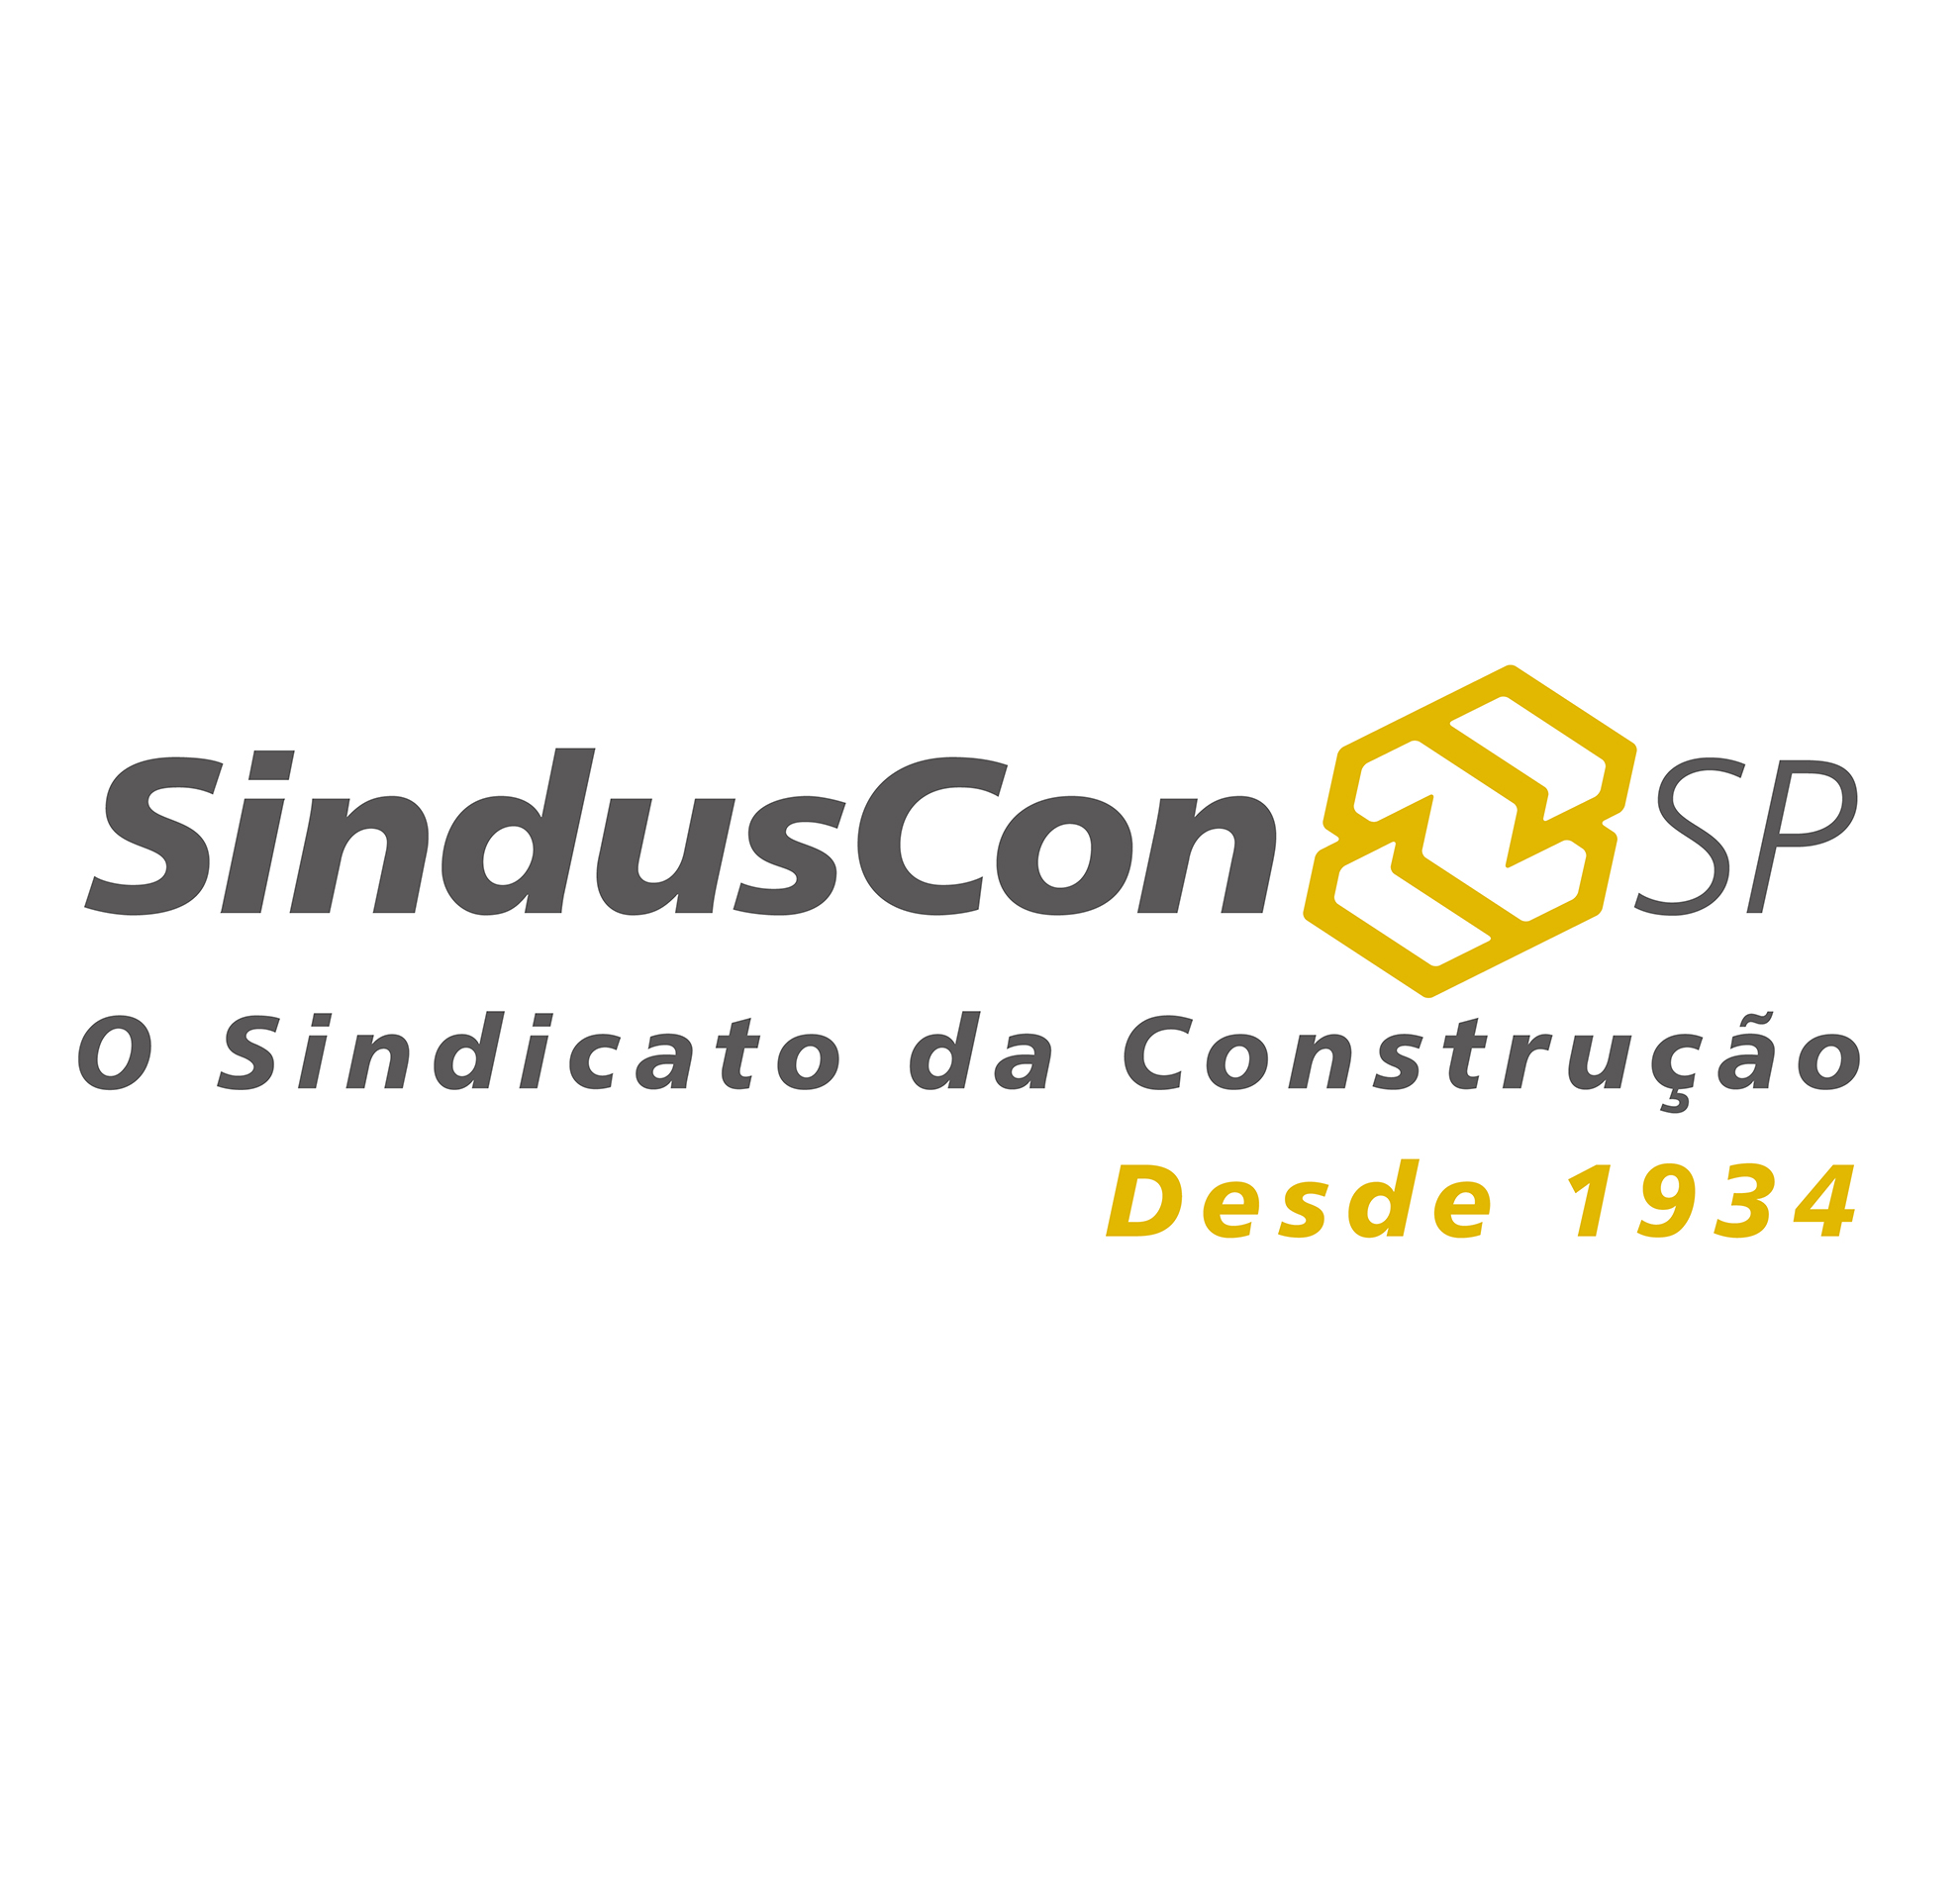 Ronaldo Xxx With Wife - SindusCon-SP tem nova diretoria eleita para biÃªnio 2019-2020 - CBIC â€“  CÃ¢mara Brasileira da Industria da ConstruÃ§Ã£o